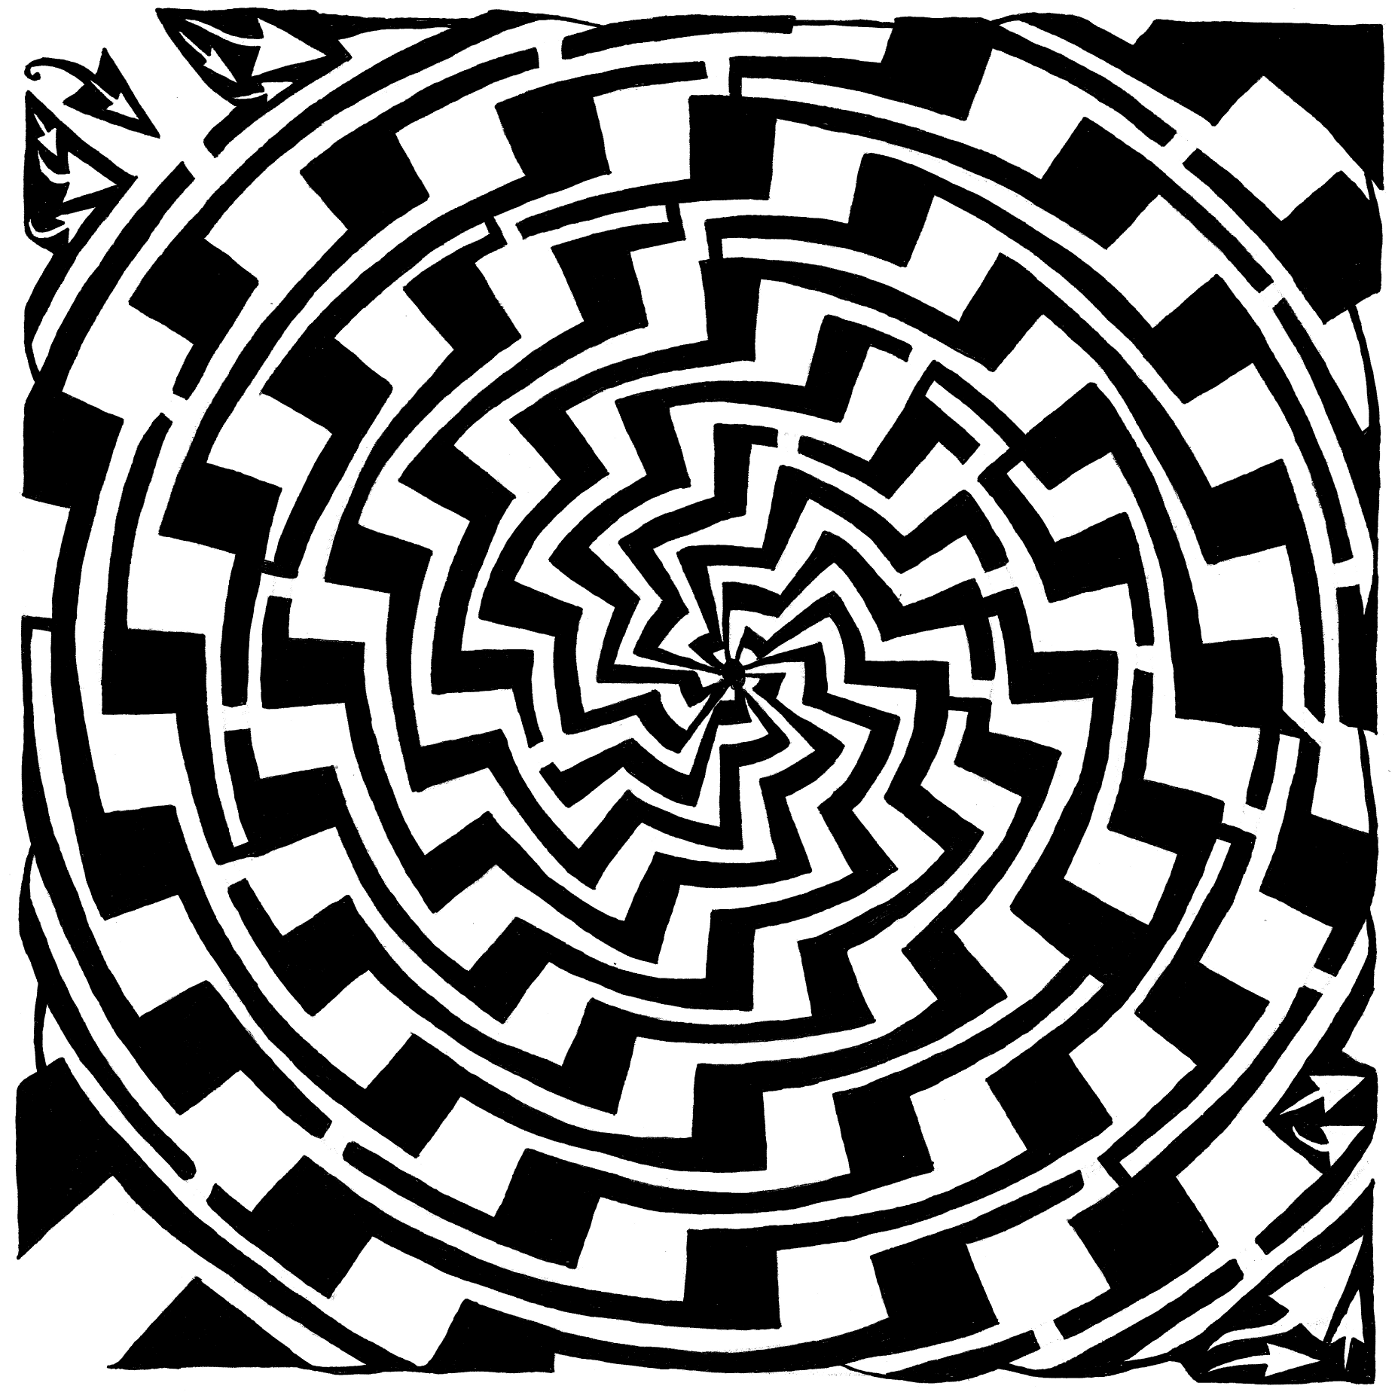 jagged swirl maze optical illusion by Yonatan Frimer